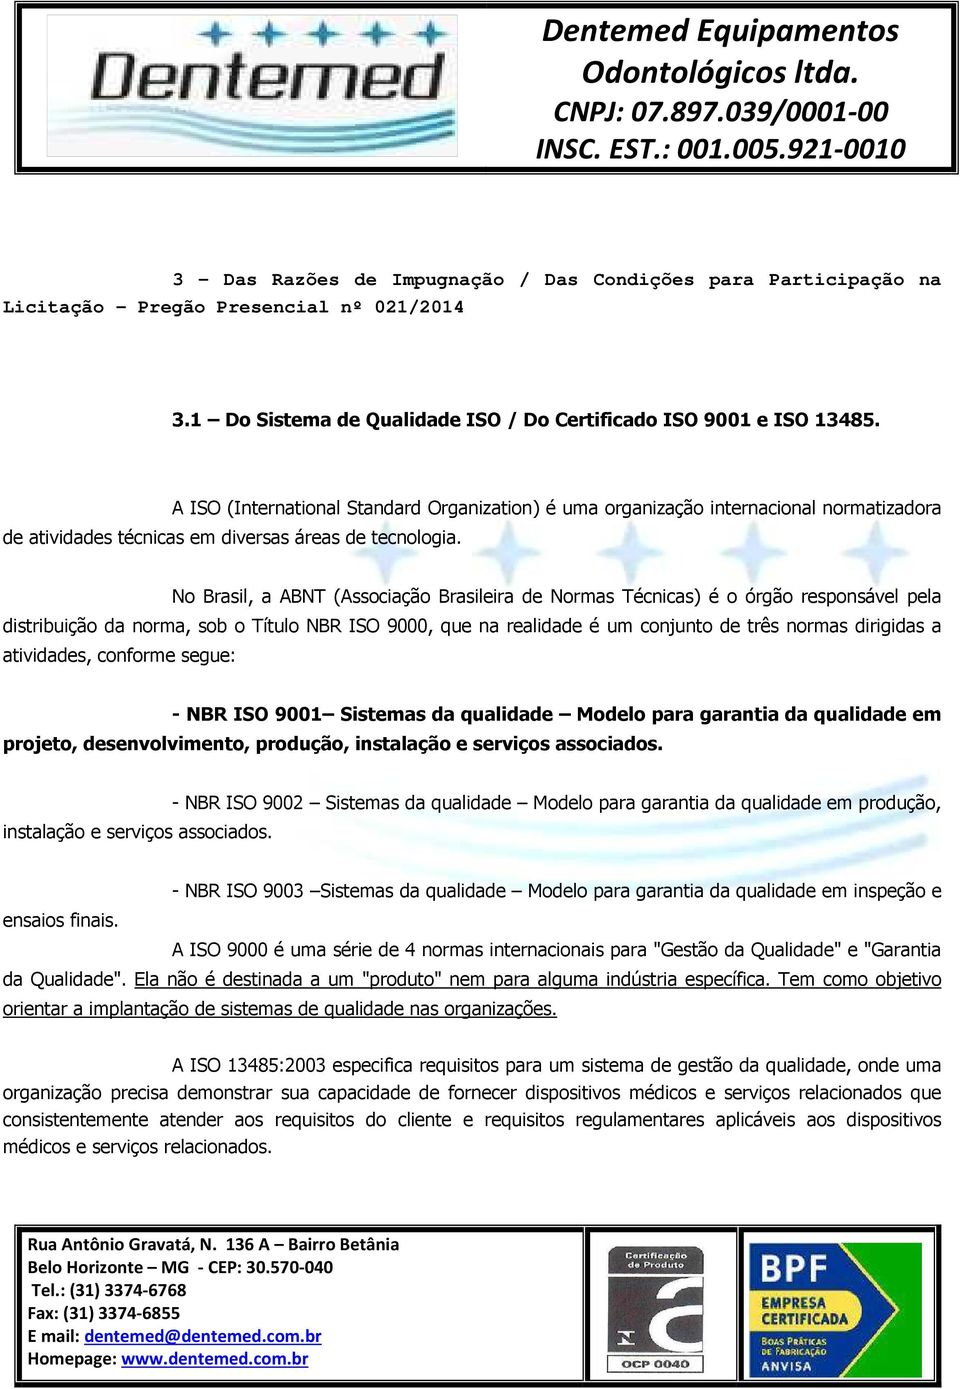 No Brasil, a ABNT (Associação Brasileira de Normas Técnicas) é o órgão responsável pela distribuição da norma, sob o Título NBR ISO 9000, que na realidade é um conjunto de três normas dirigidas a